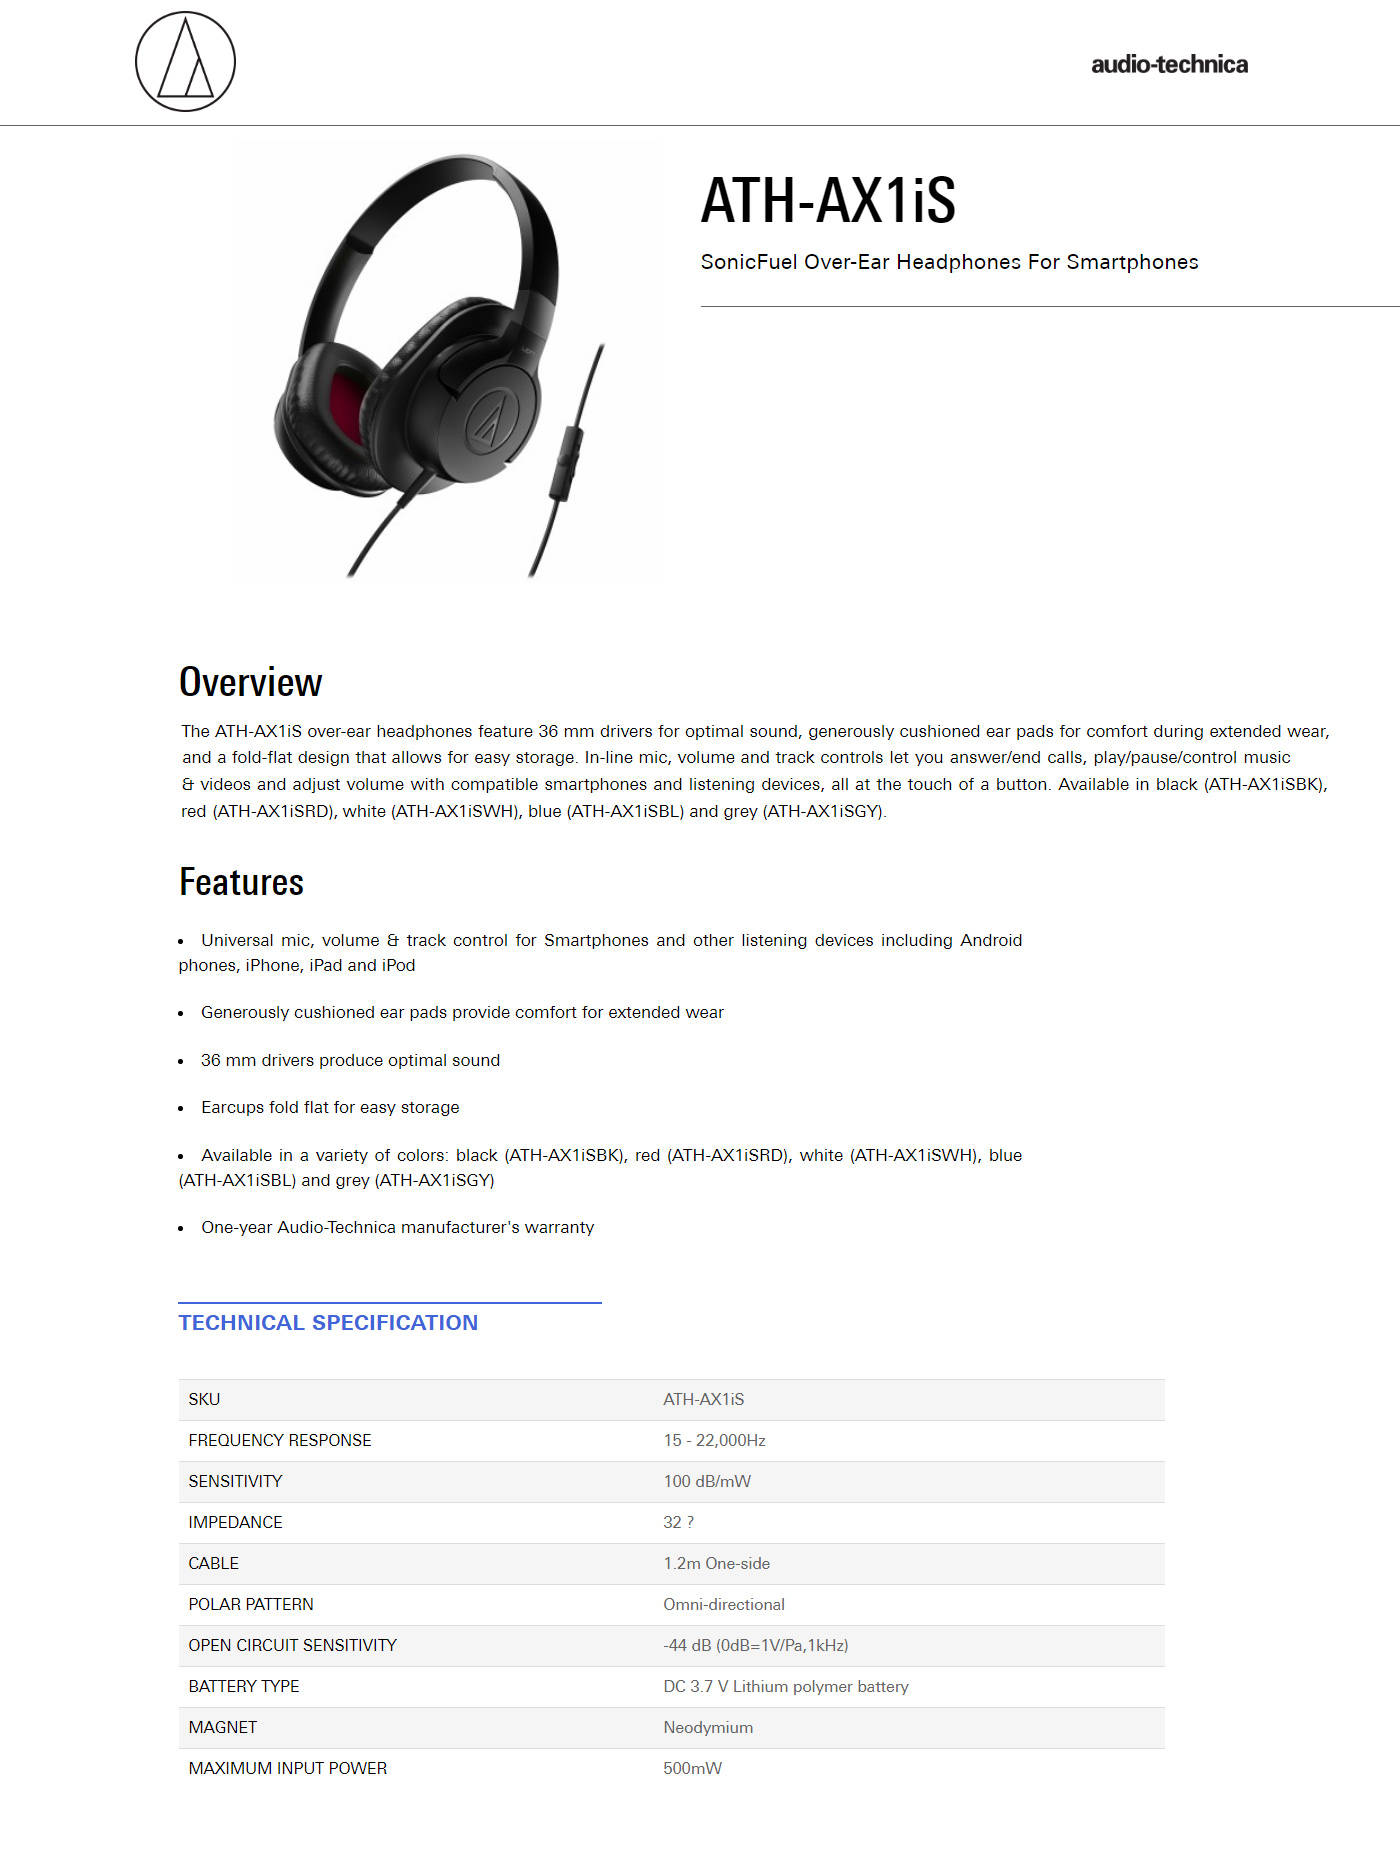 Buy Online Audio Technica ATH-AX1IS-BK SonicFuel Over-ear Headphones - Black